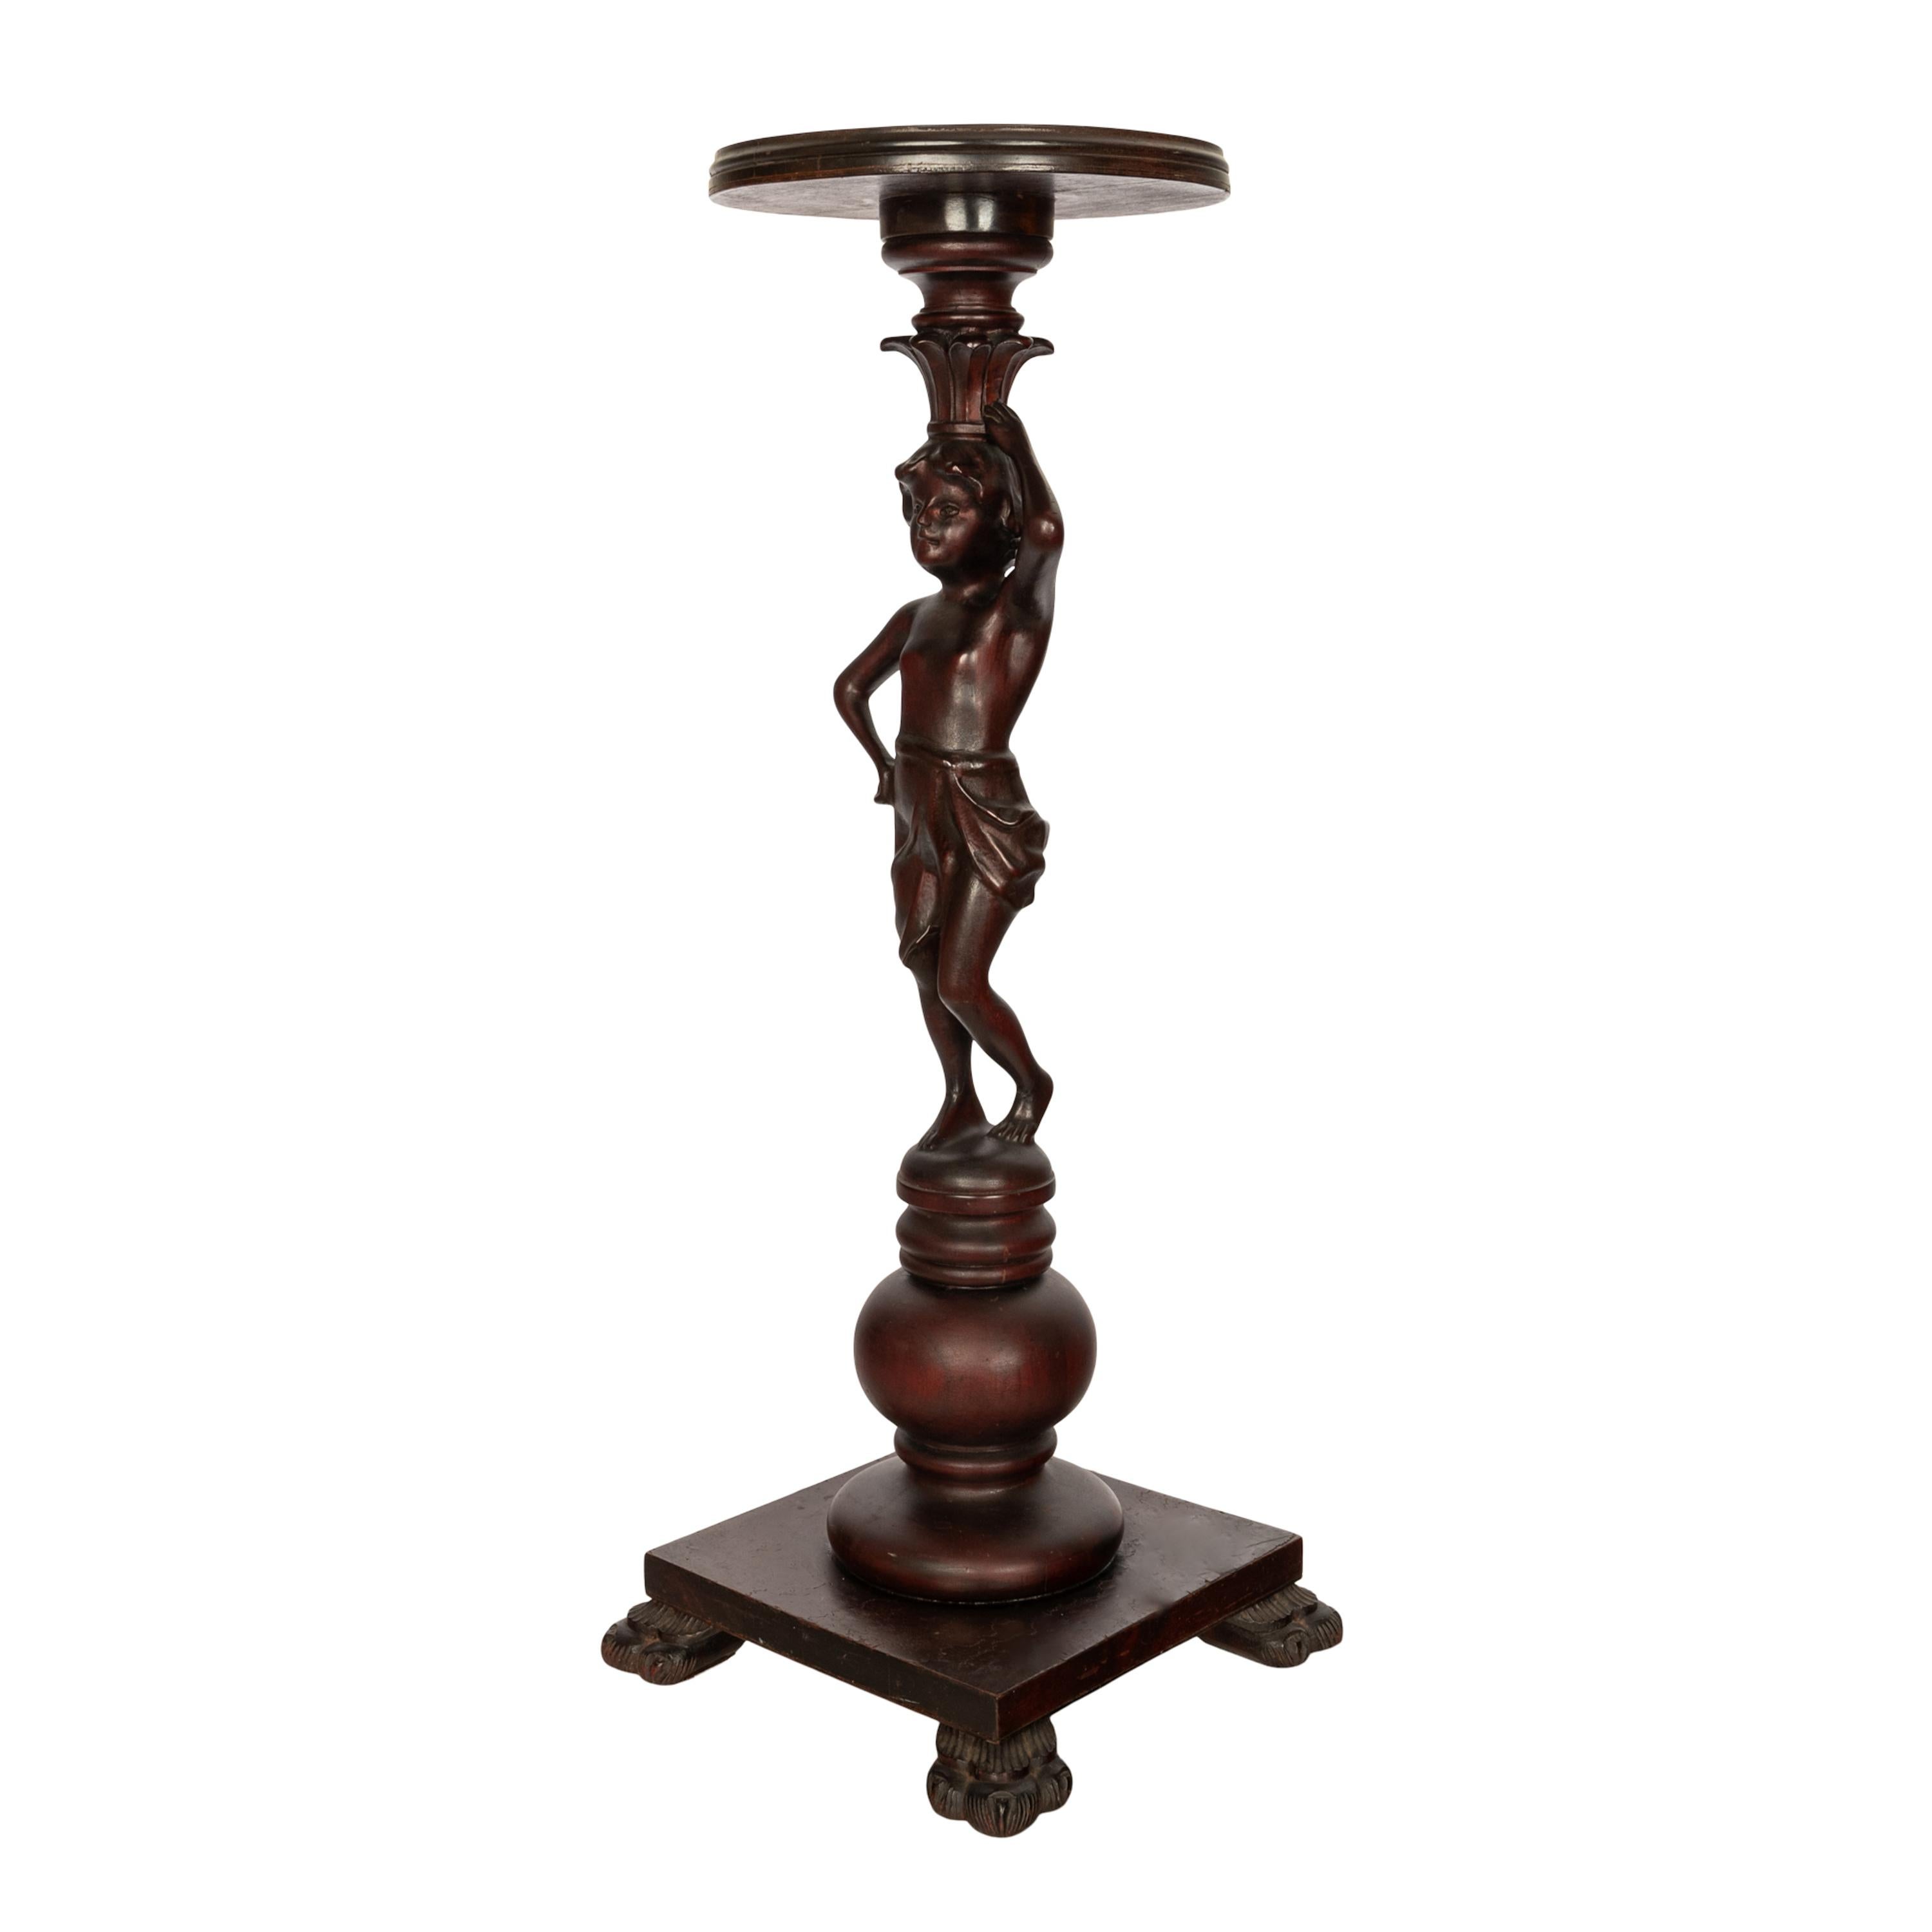 Un bon ancien chandelier/chandelier à vin sur piédestal en noyer italien sculpté, table d'appoint, Circa 1900.
La table est très bien sculptée avec un plateau circulaire, le support du piédestal est sculpté d'une figure mauresque debout sur des